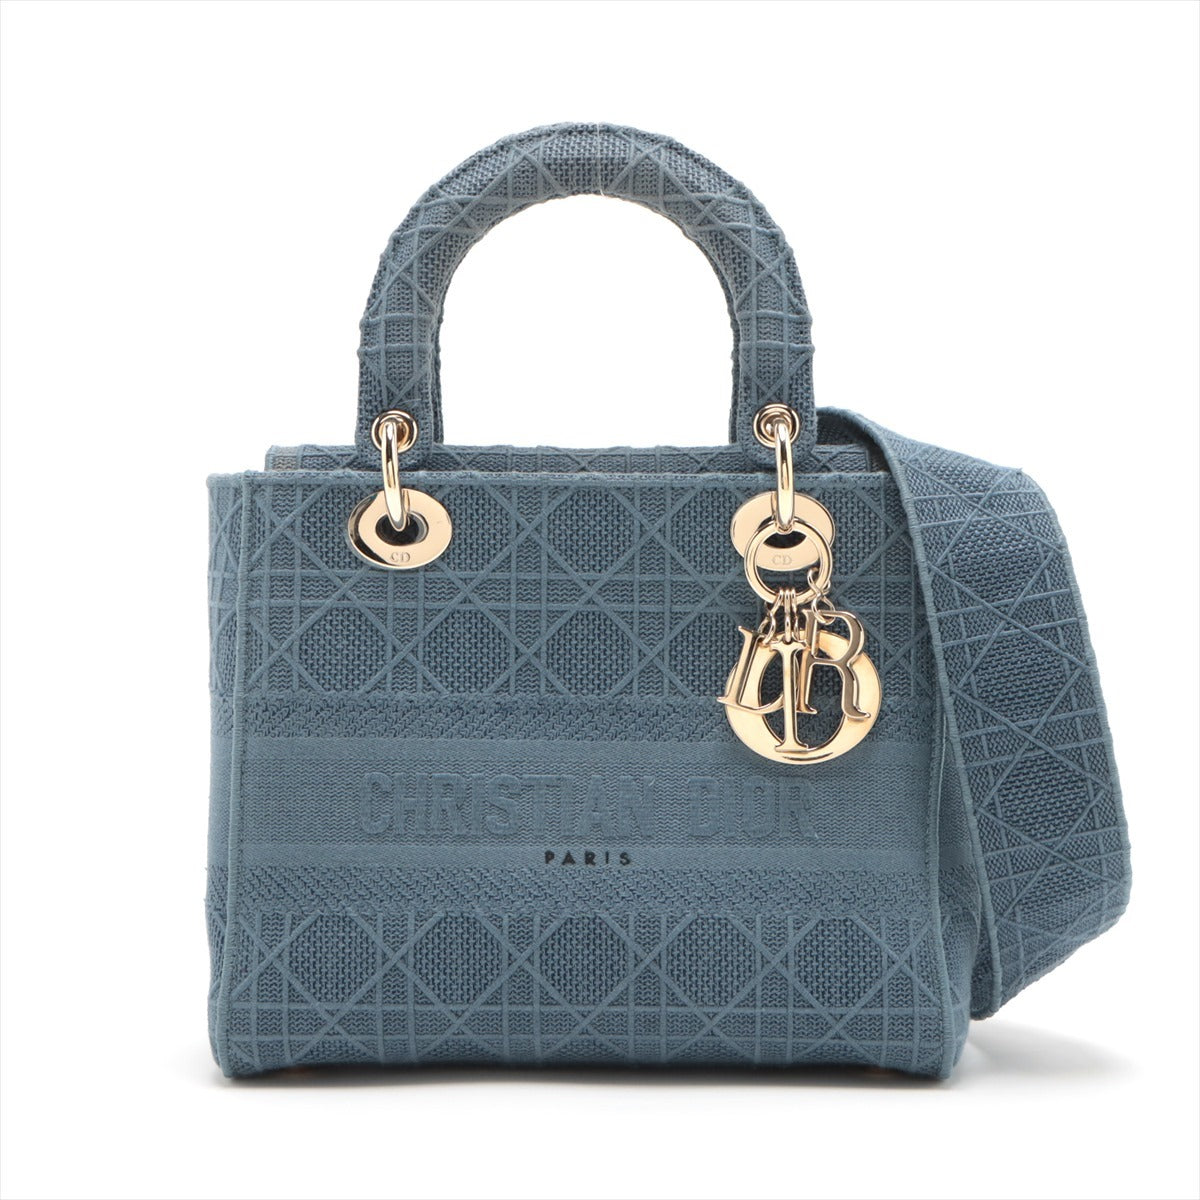 Christian Dior Lady Dior Cannage canvas 2way handbag Blue